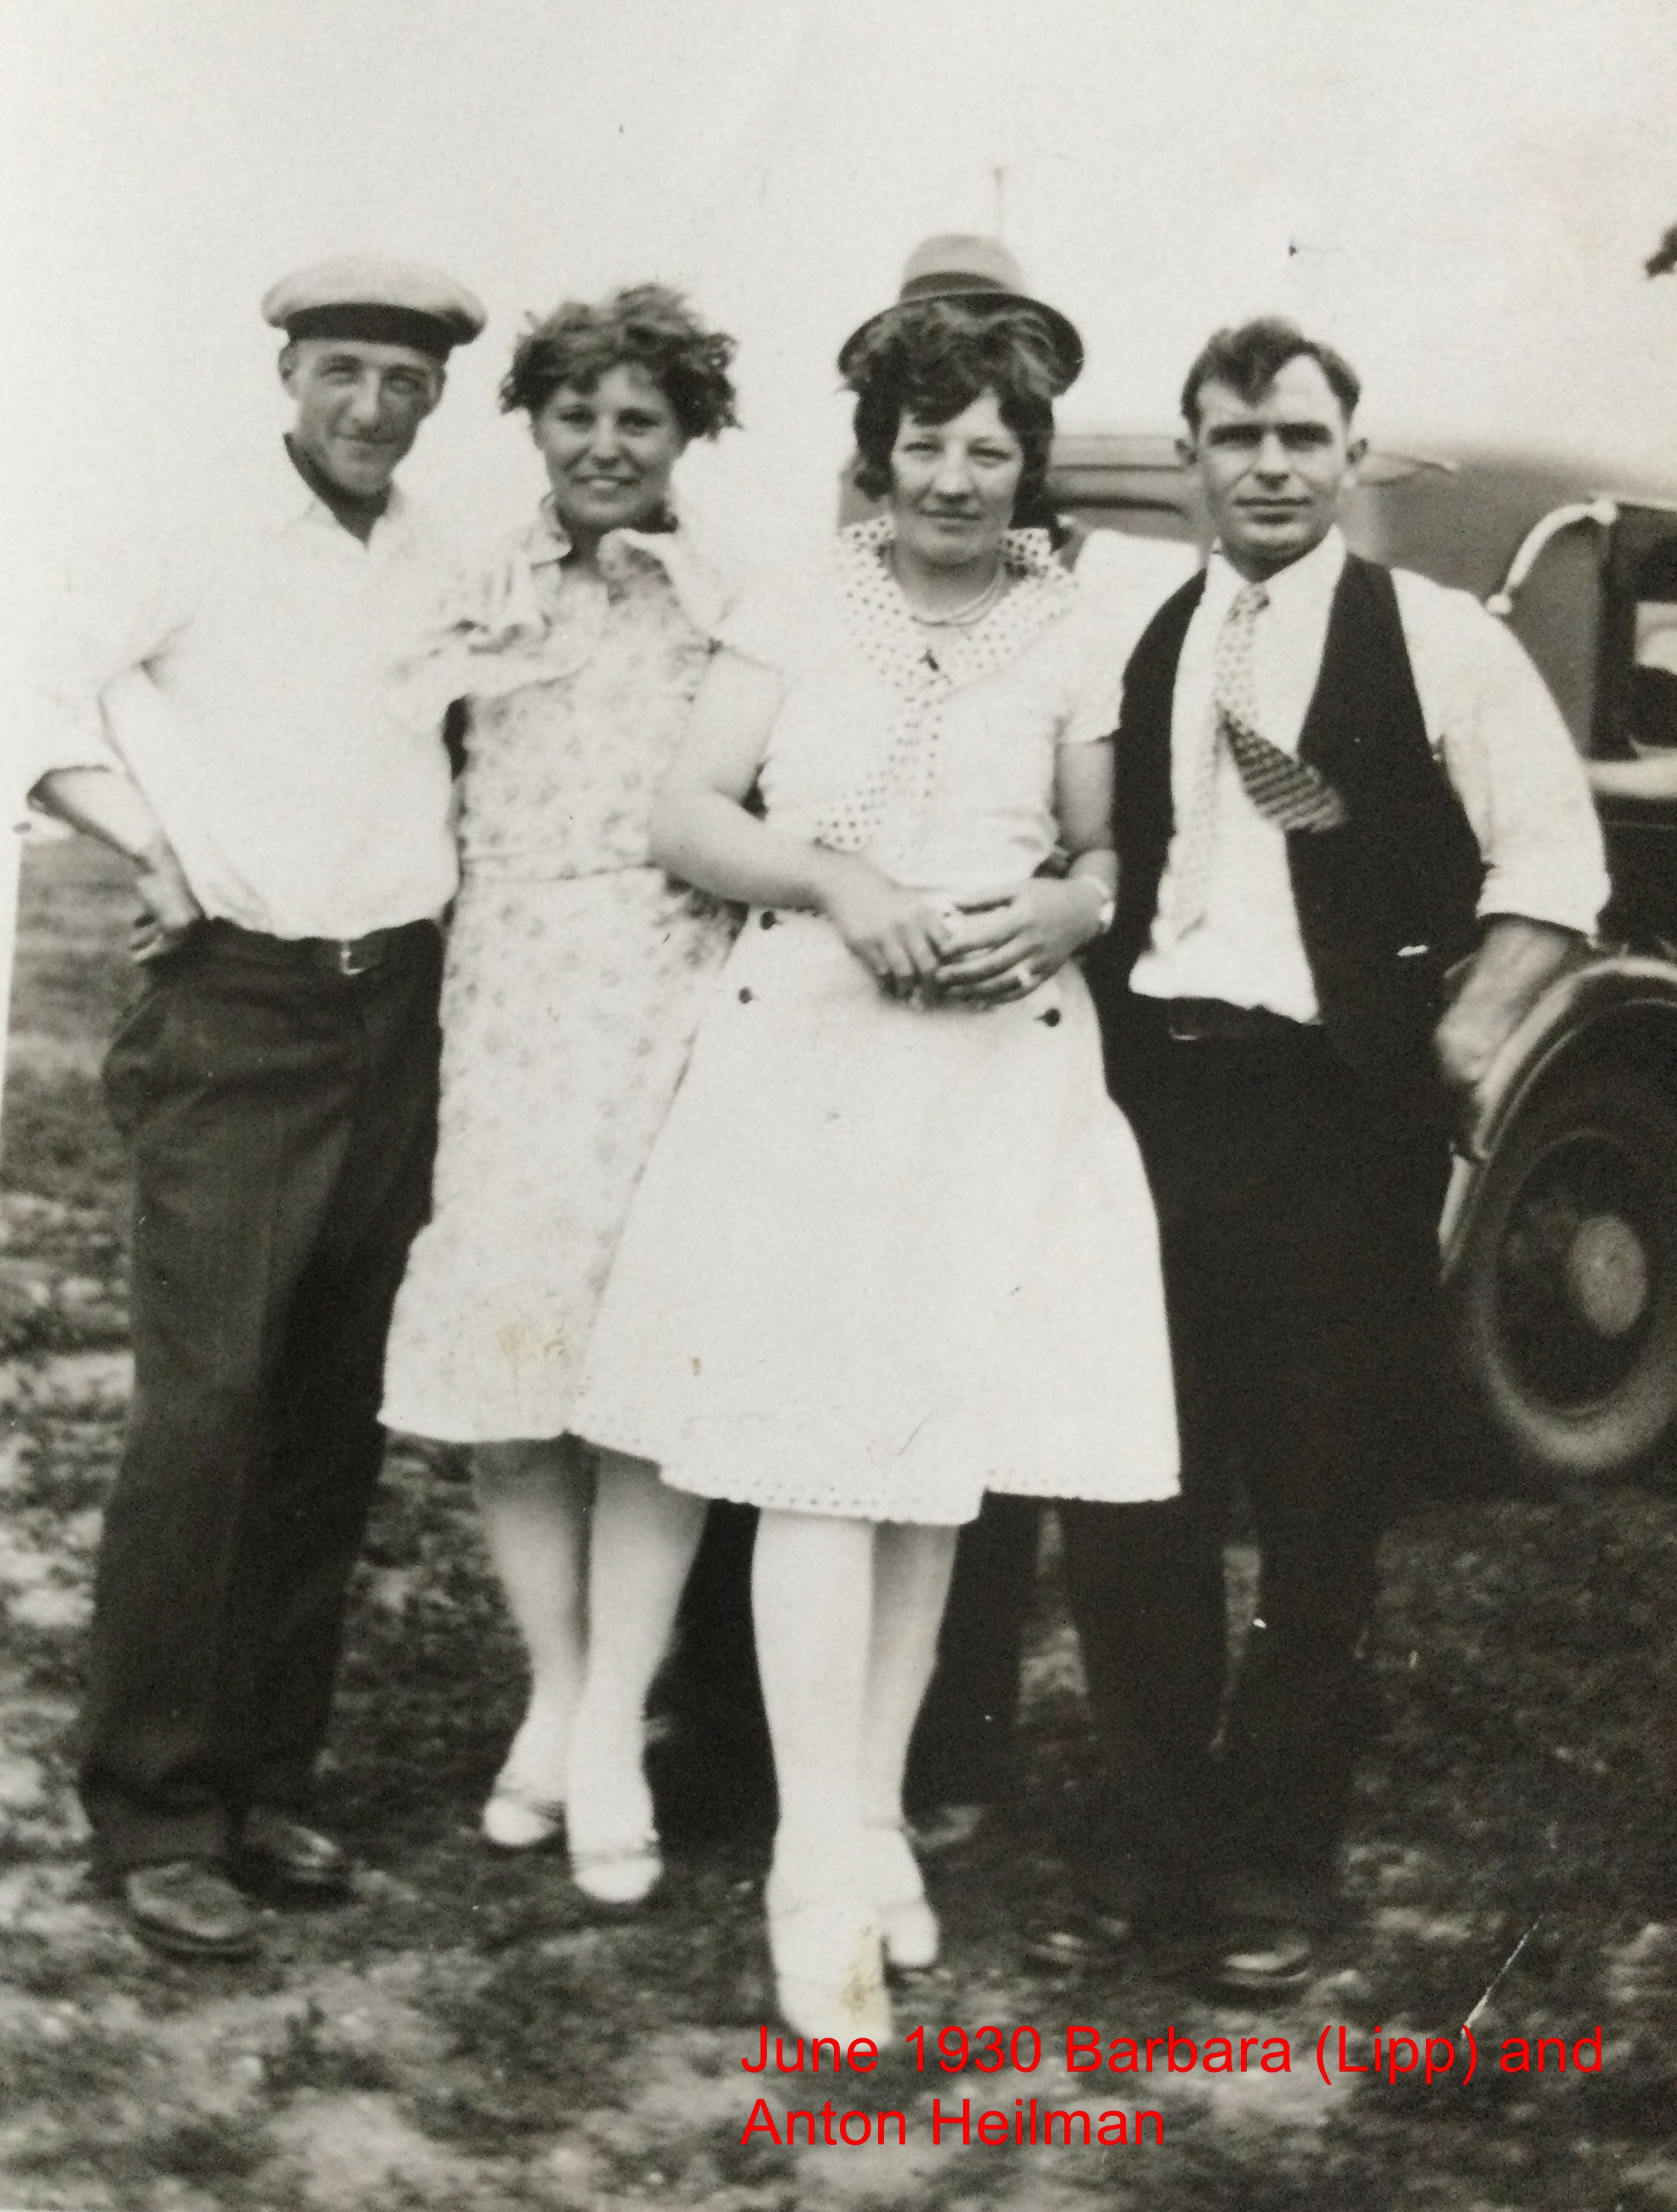 June 1930, Anton and Barbara (Lipp) Heilman.  Couple on left unknown.